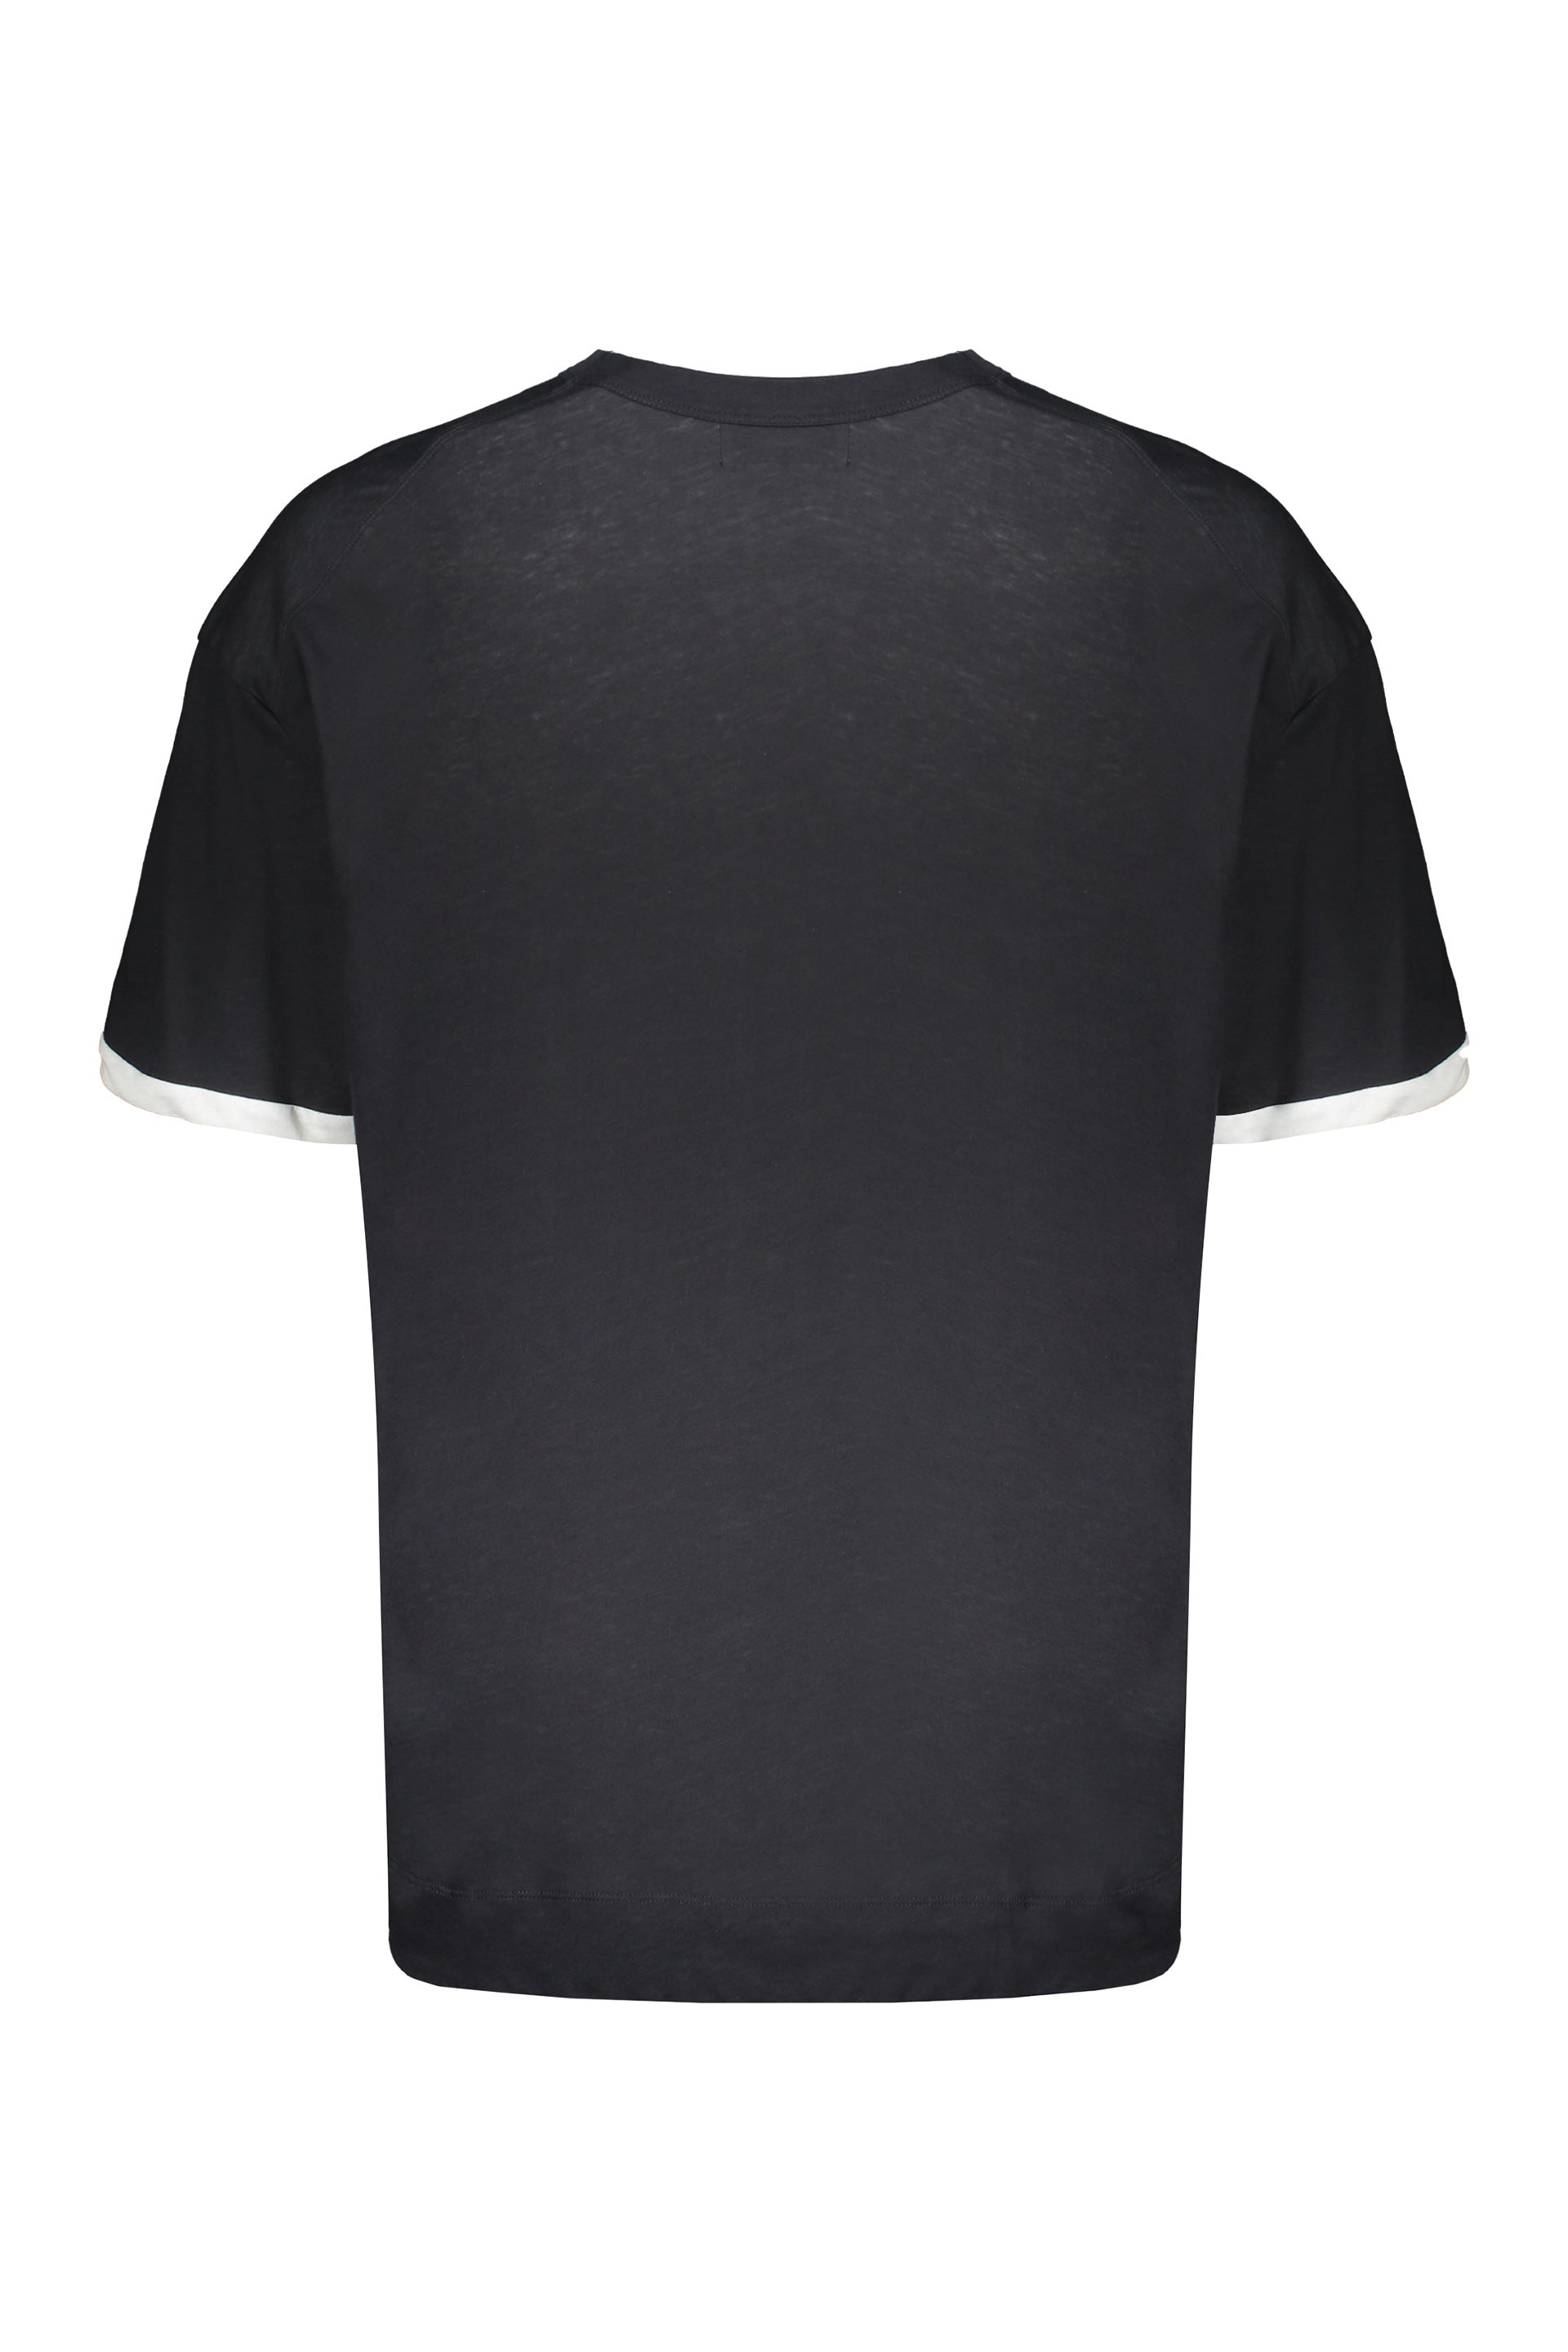 AMBUSH-OUTLET-SALE-Cotton-maxi-T-shirt-Shirts-S-ARCHIVE-COLLECTION-2.jpg